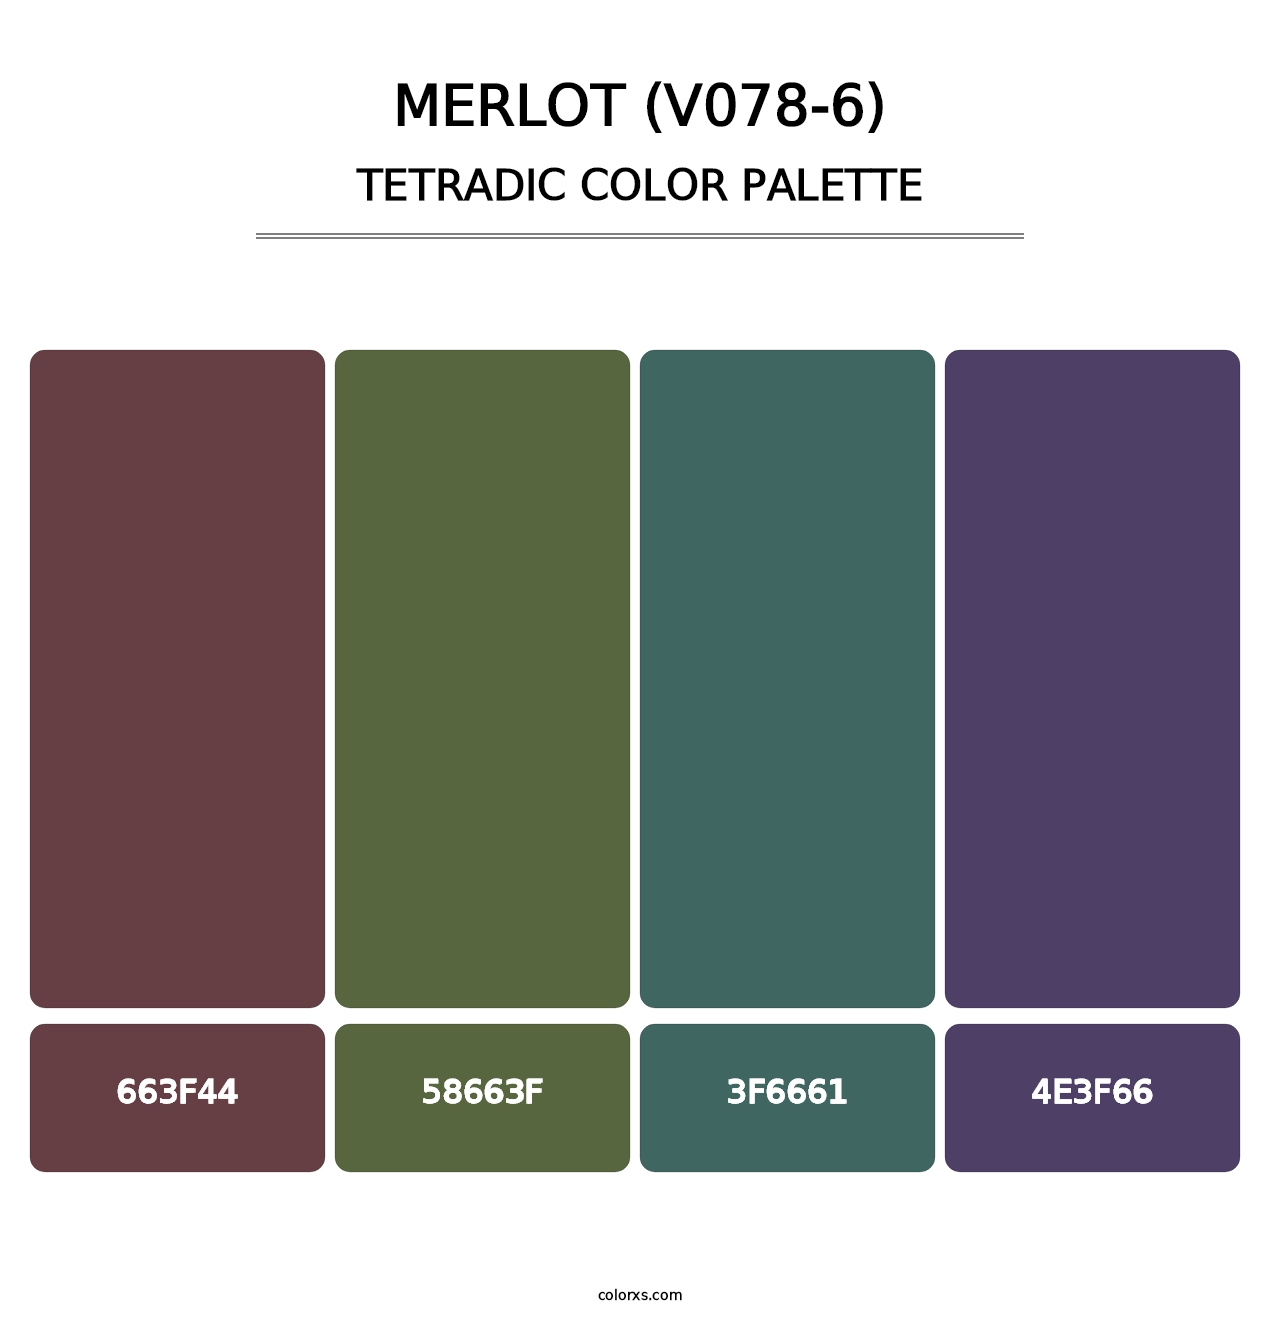 Merlot (V078-6) - Tetradic Color Palette